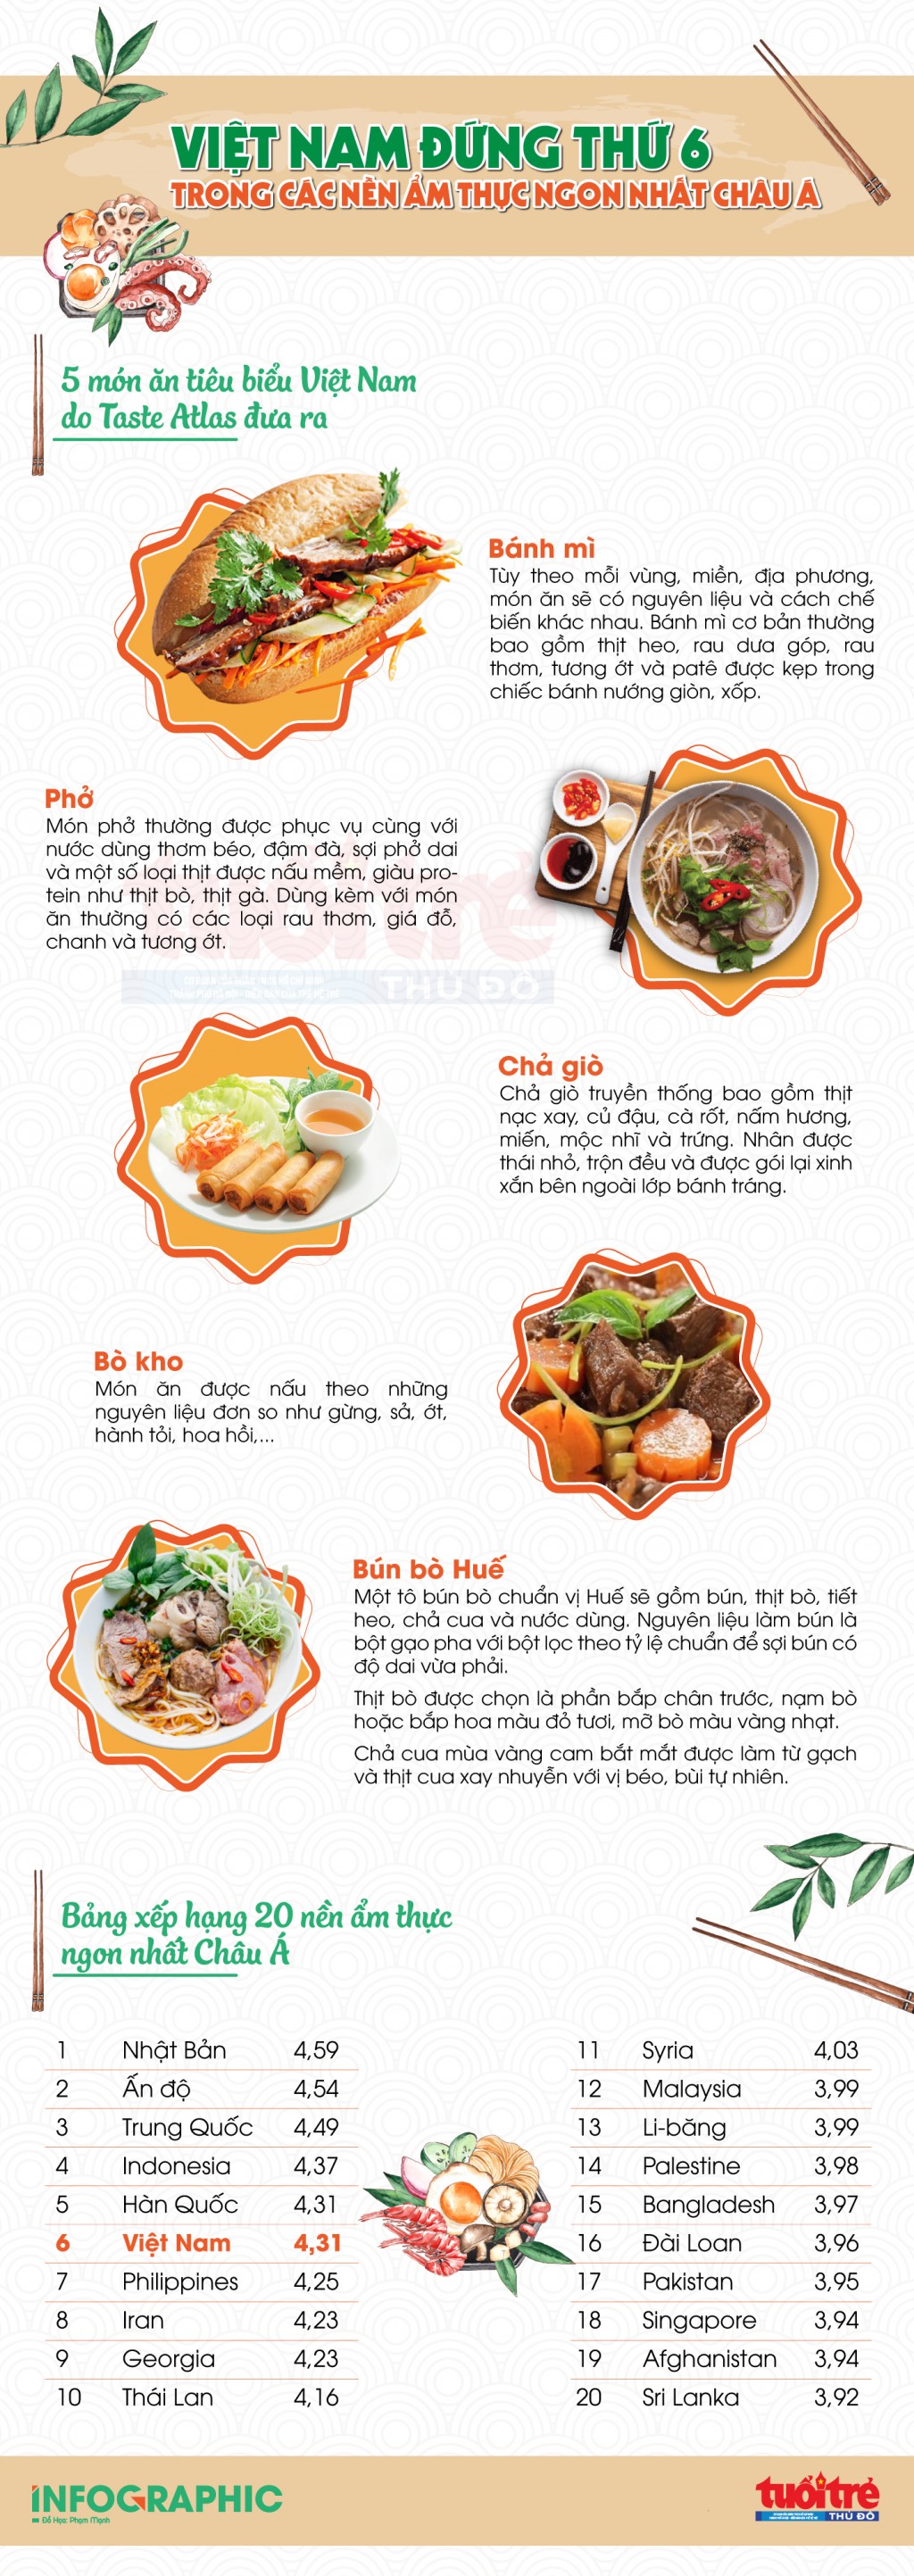 Việt Nam đứng thứ 6 các nền ẩm thực ngon nhất Châu Á